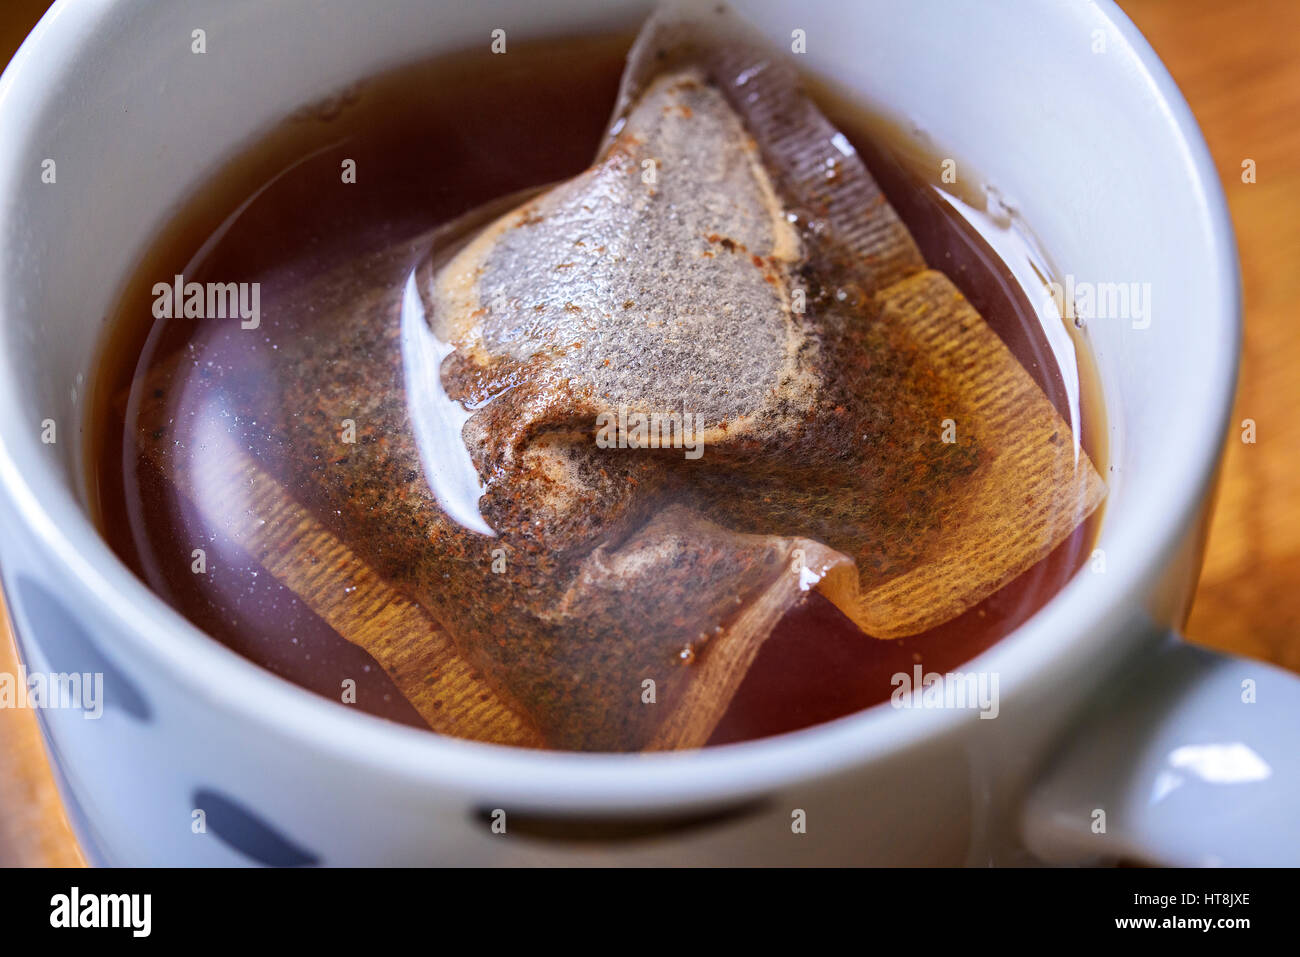 Tasse de thé petit déjeuner anglais traditionnel. Image montre un sachet à thé infuser dans une tasse d'eau bouillante. Flottant sur la surface Banque D'Images